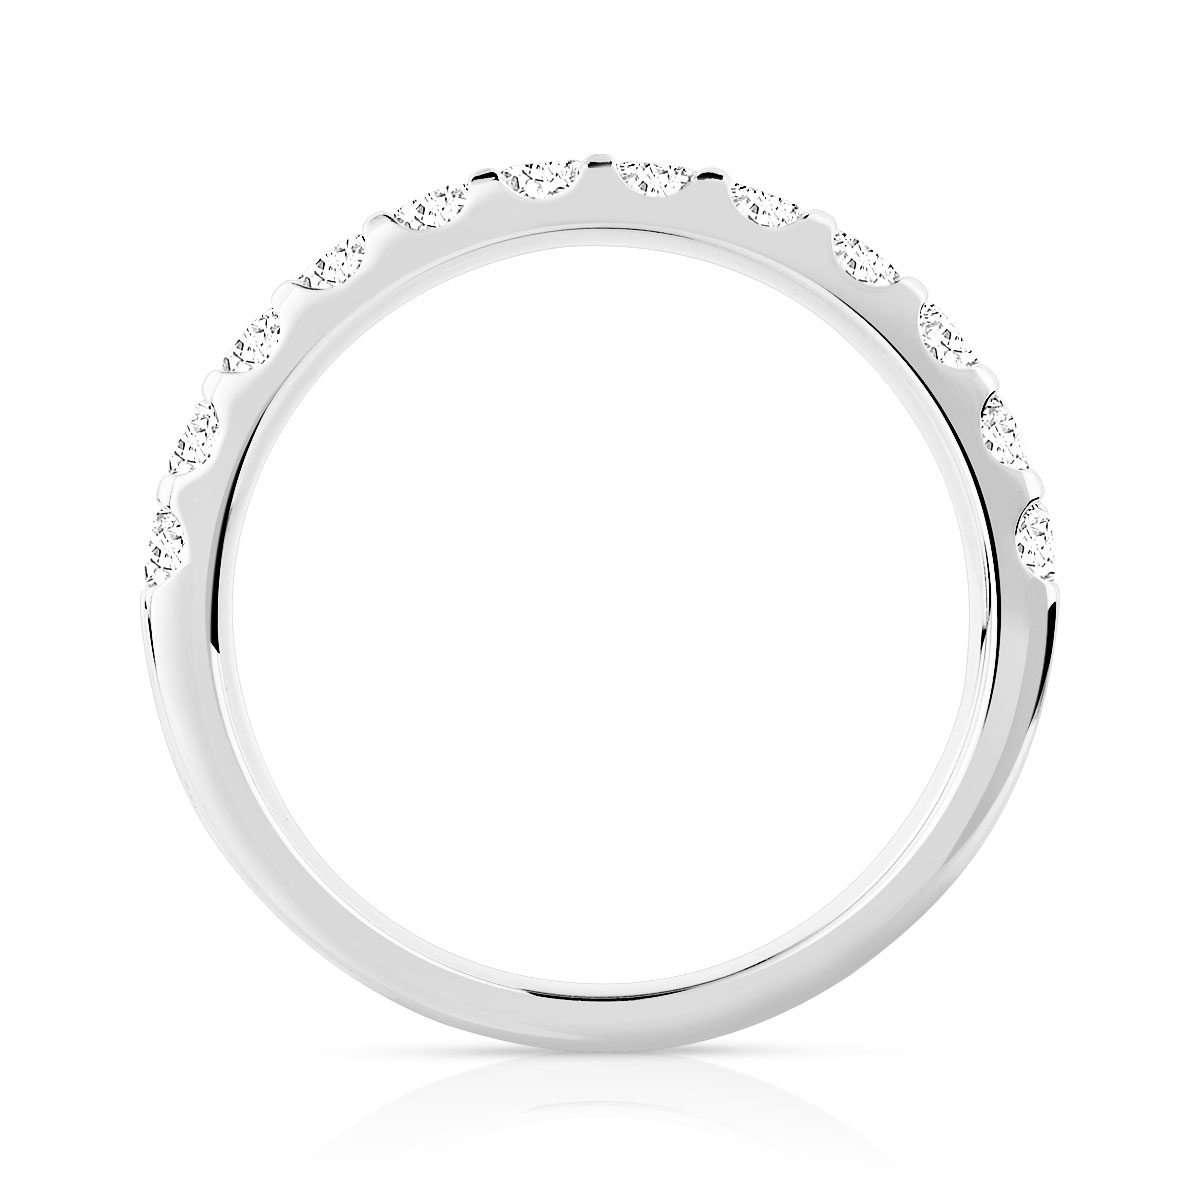 Alliance demi-T or 750 blanc diamants synthétiques 0.75 carat - vue 2